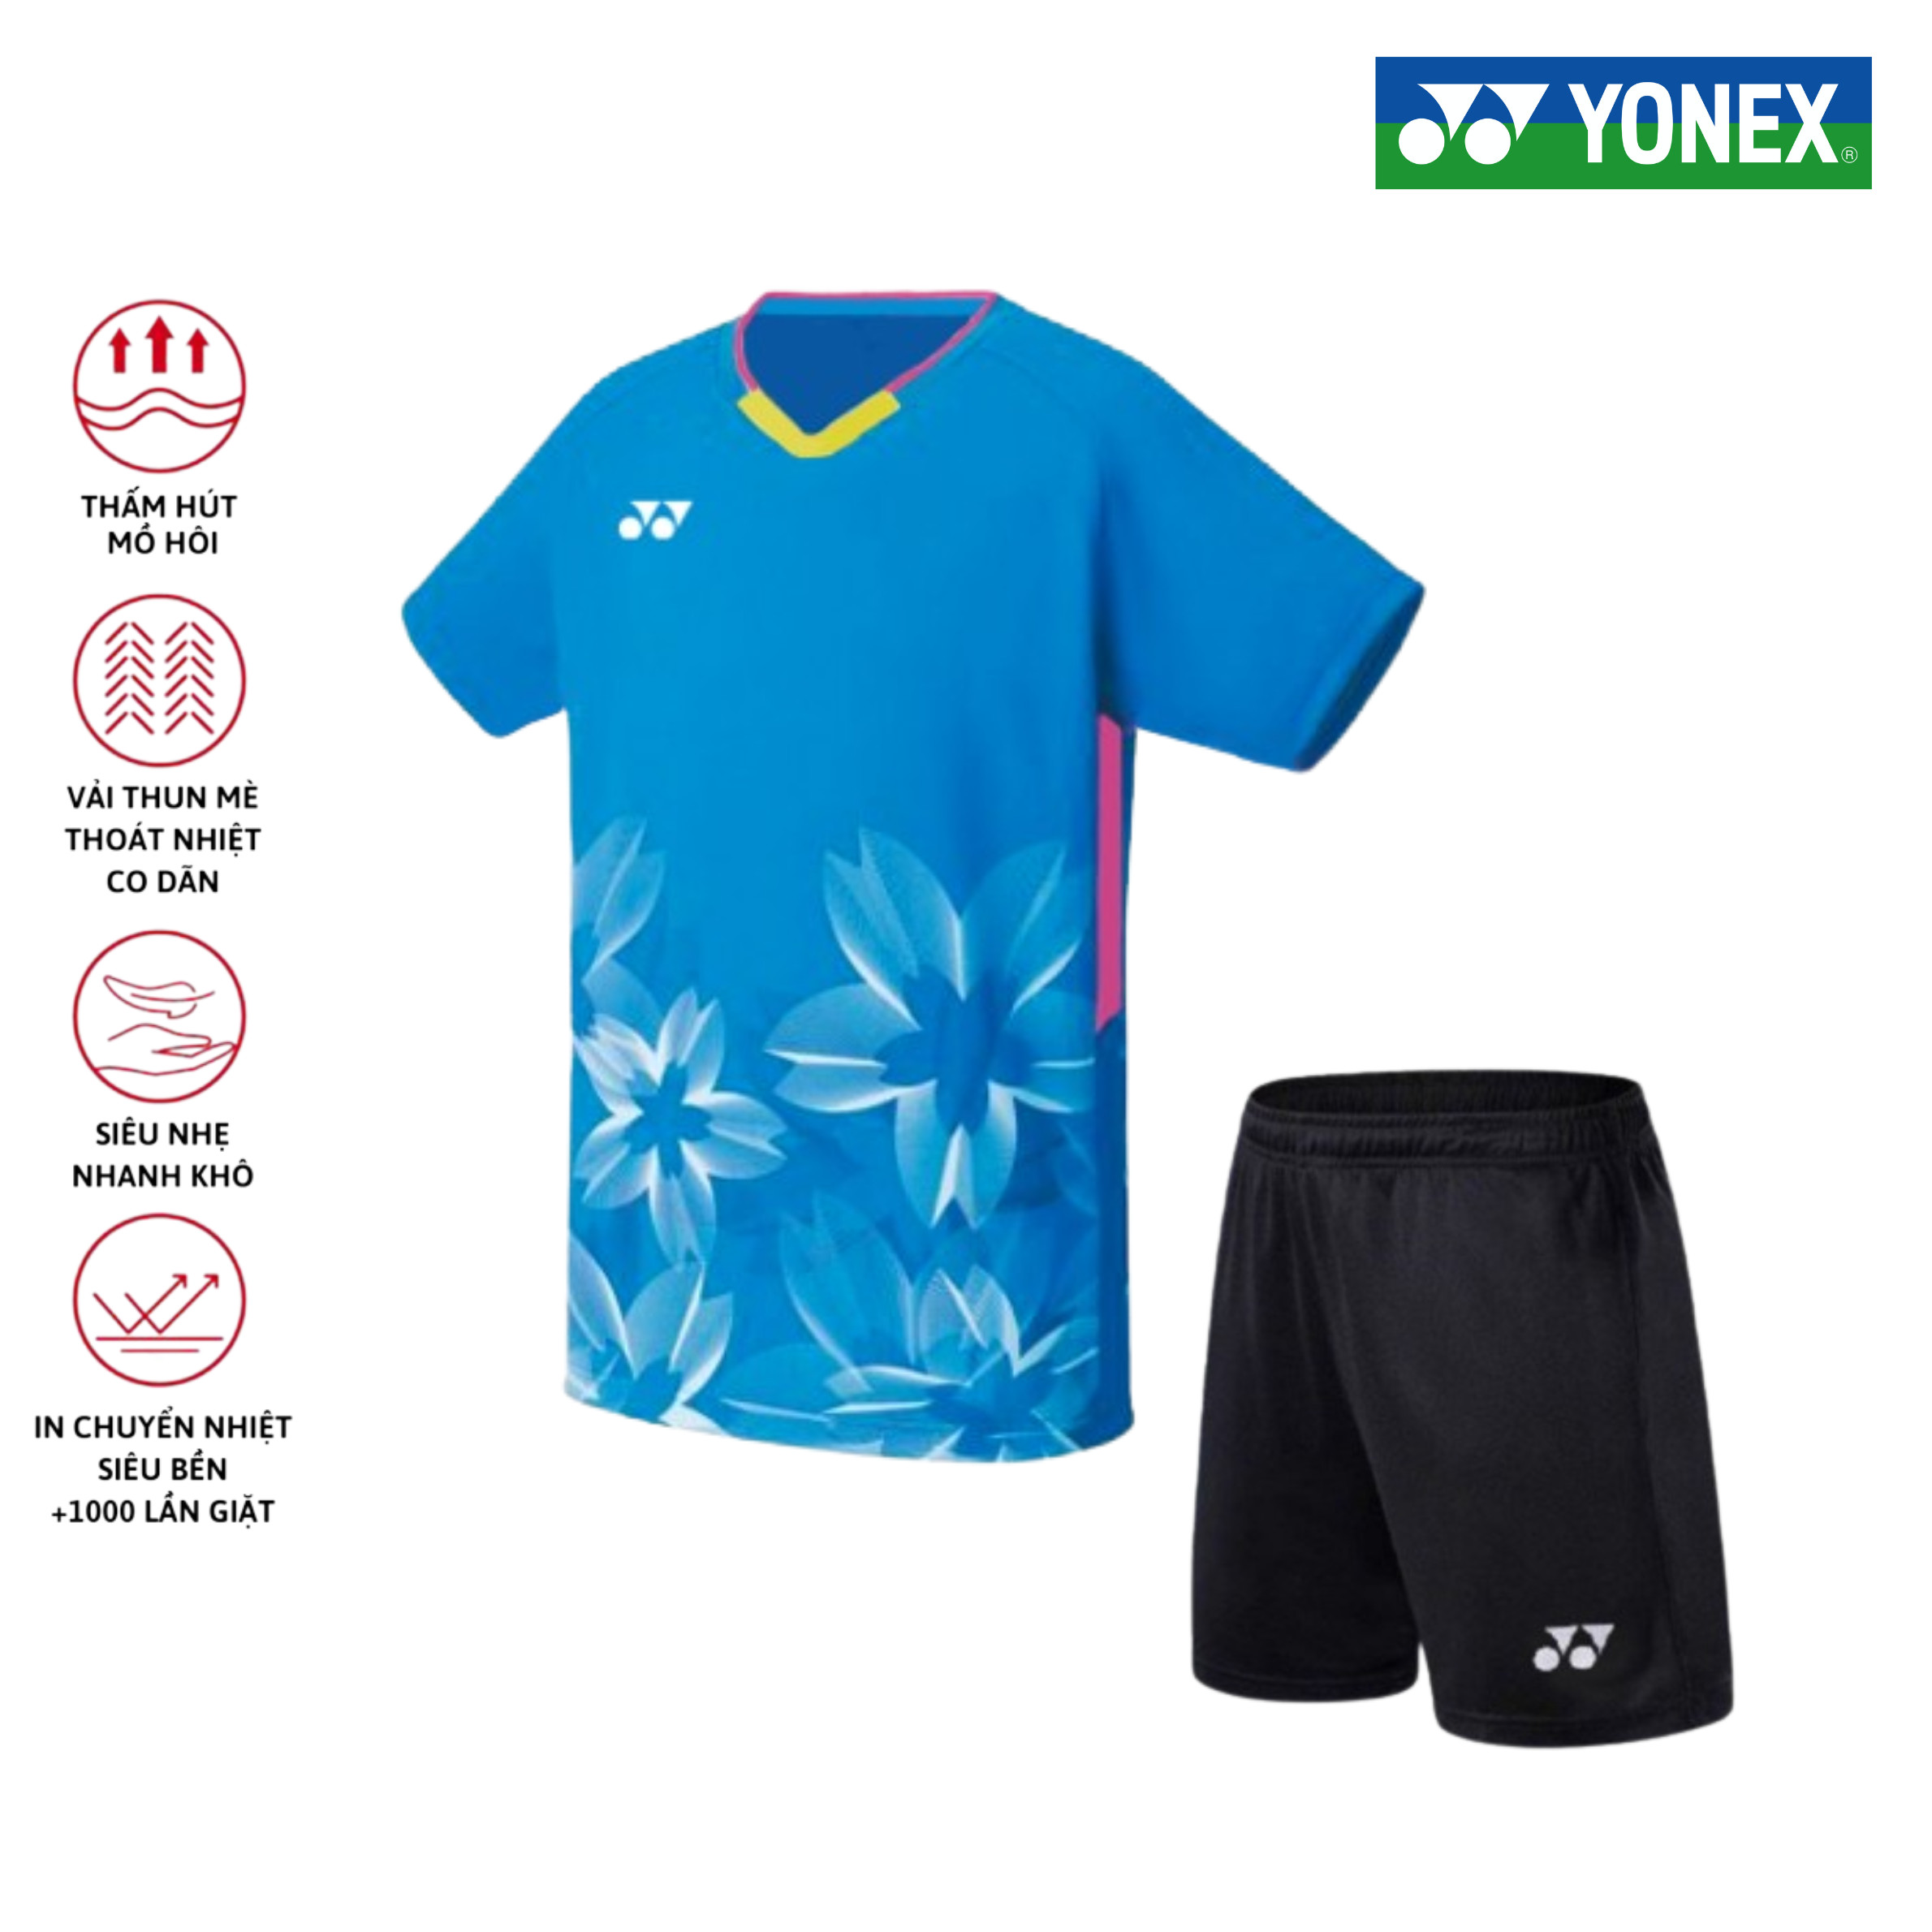 Áo cầu lông, quần cầu lông Yonex chuyên nghiệp mới nhất sử dụng tập luyện và thi đấu cầu lông A499